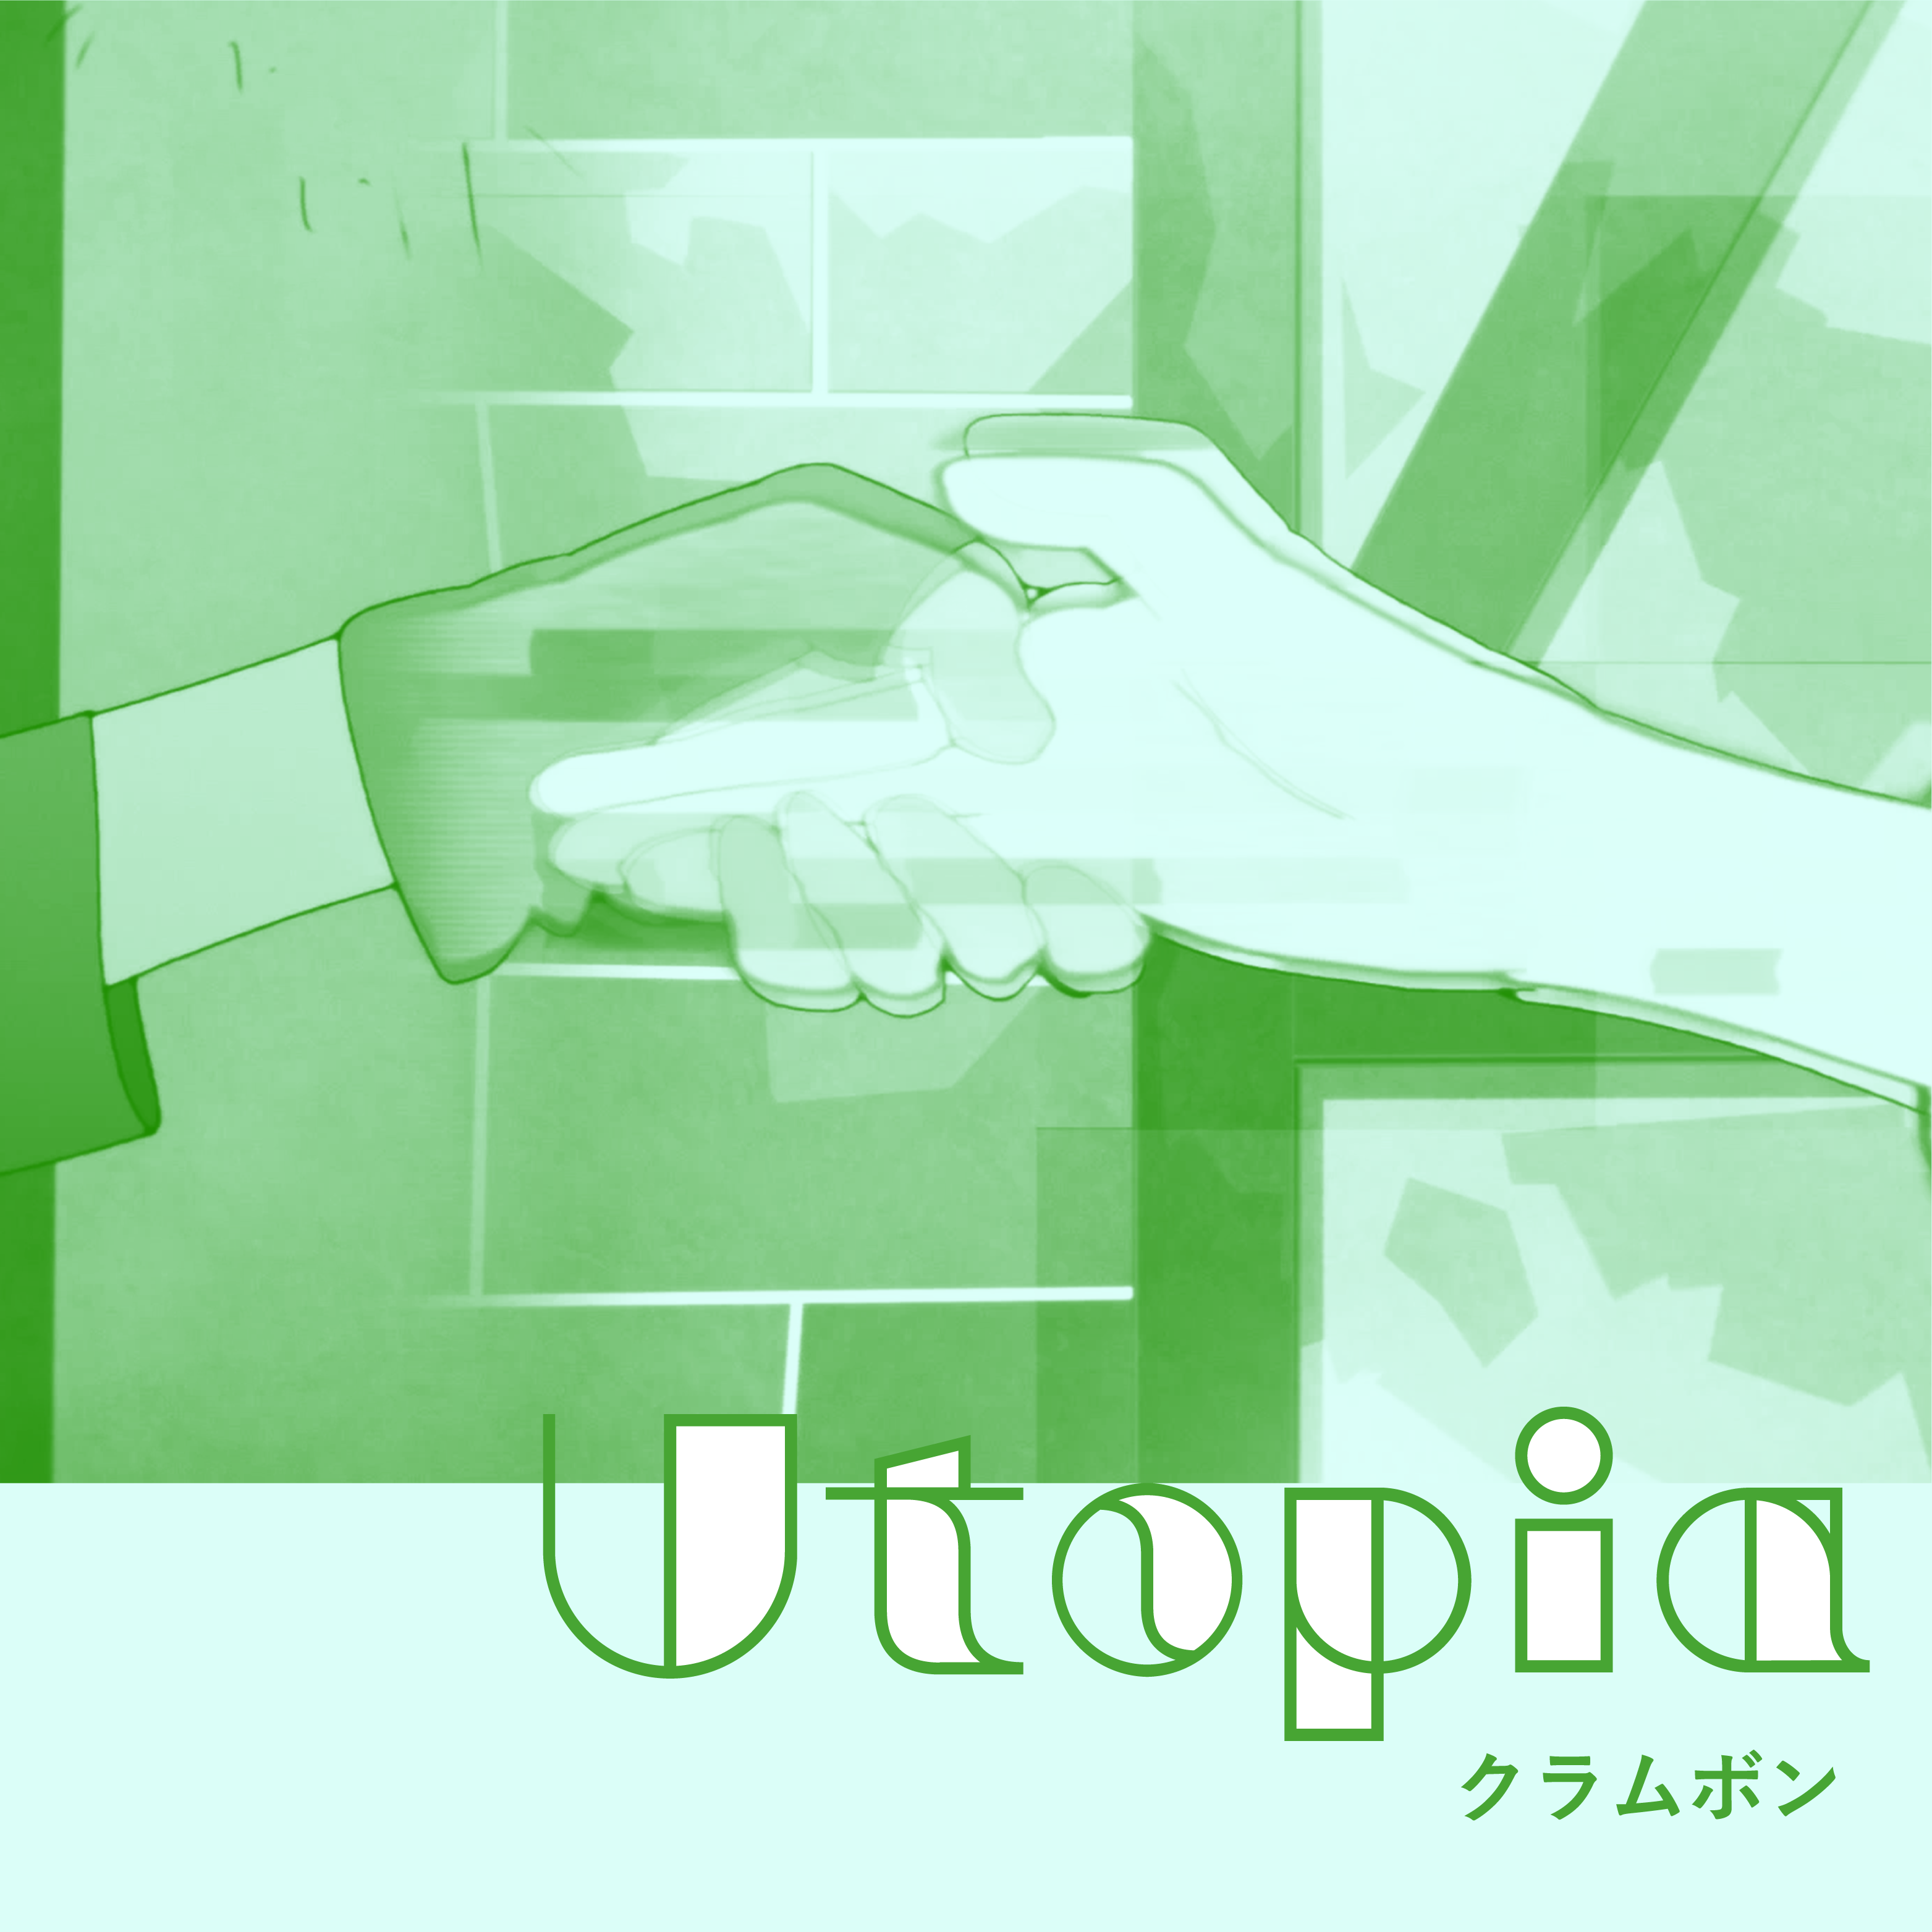 【ユーレイデコ】Utopia_配信ジャ???.png